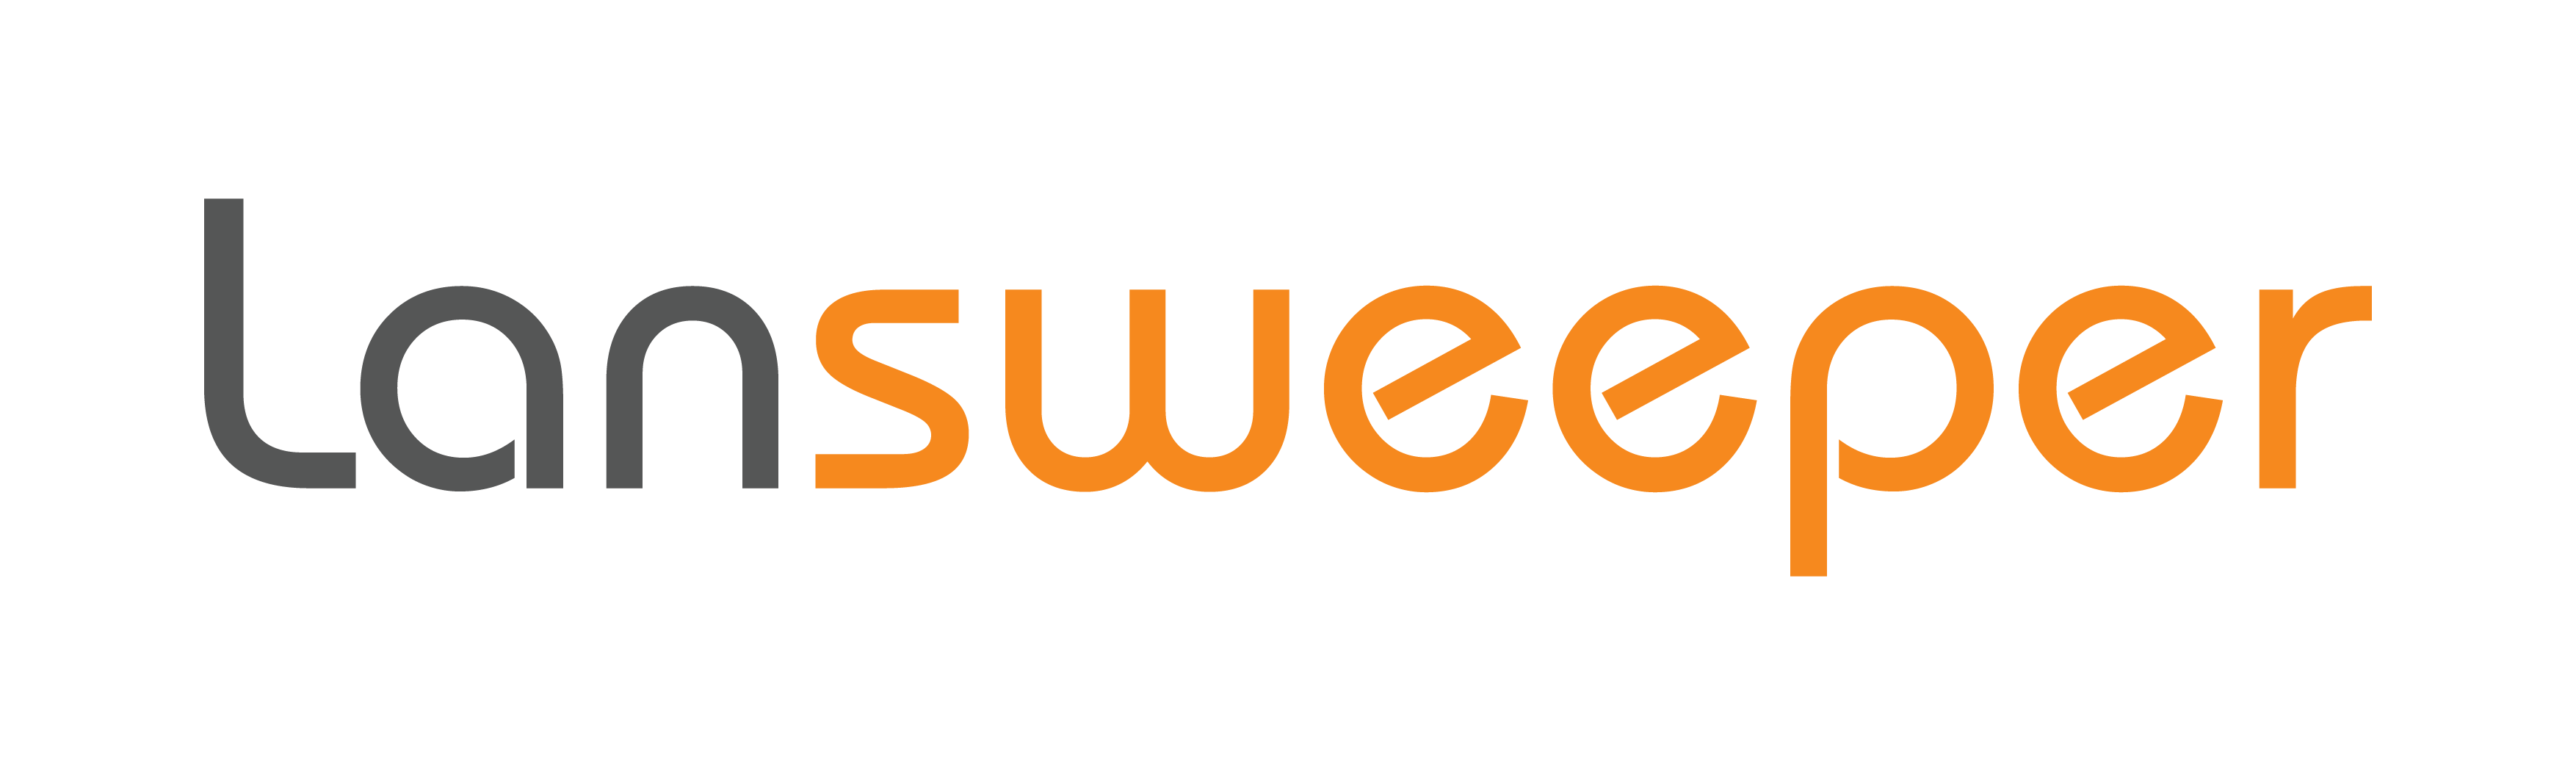 Lansweeper logo